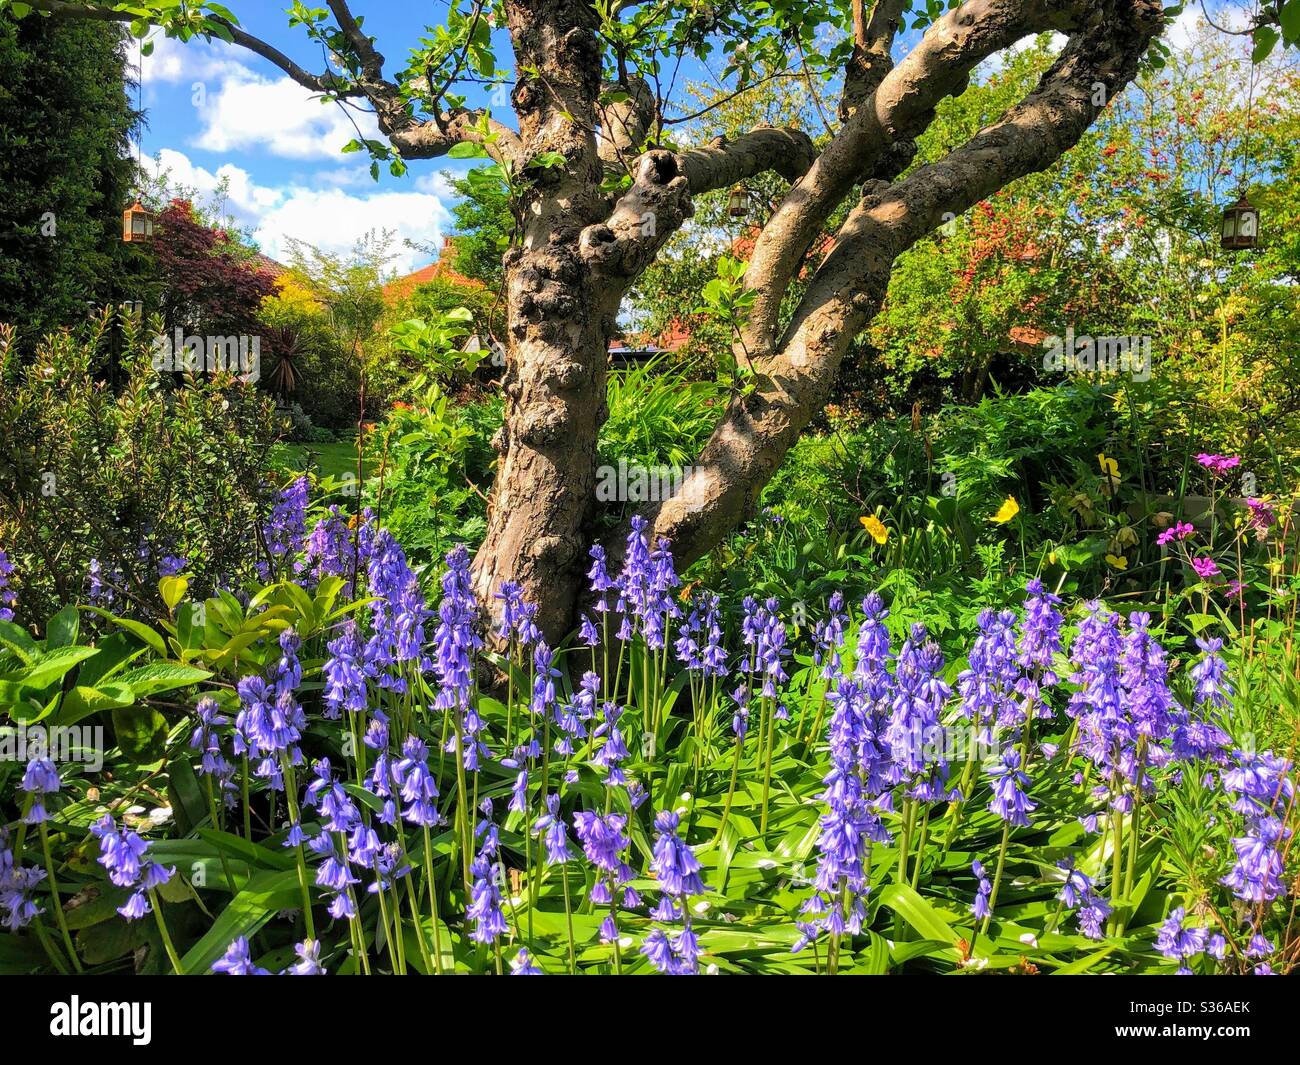 Bordure fleurie pleine de cloches dans un jardin mature, Angleterre, Royaume-Uni Banque D'Images